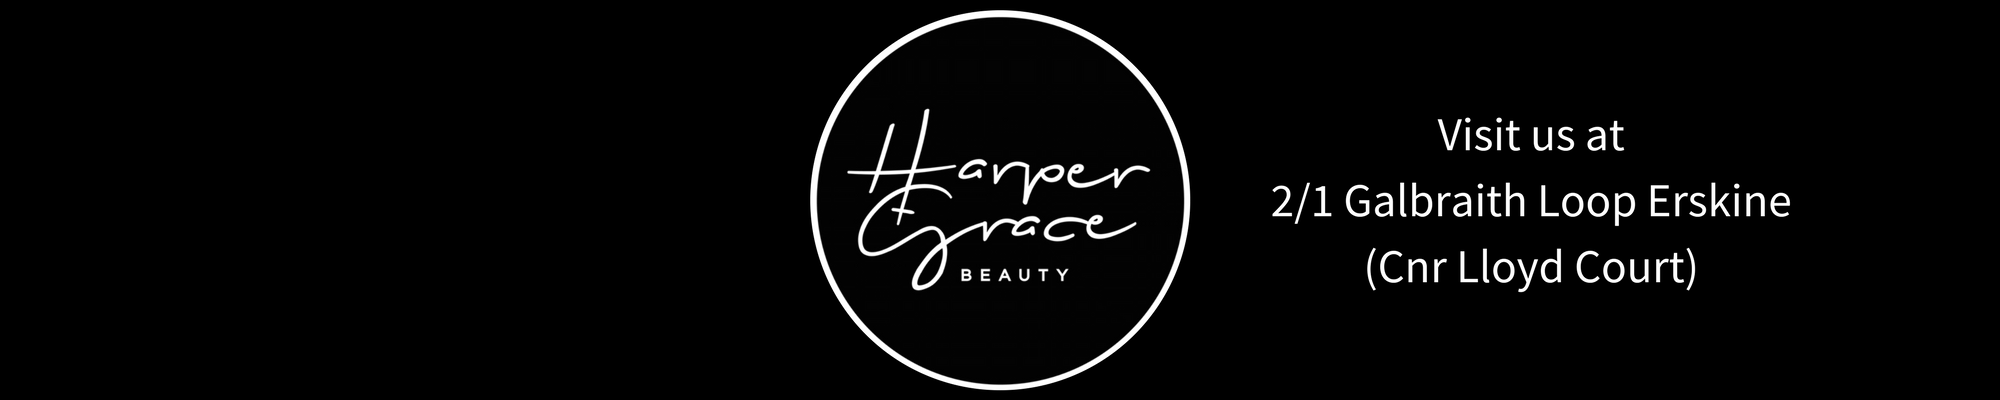 Grace Beauty Logo - Home - Harper + Grace Beauty